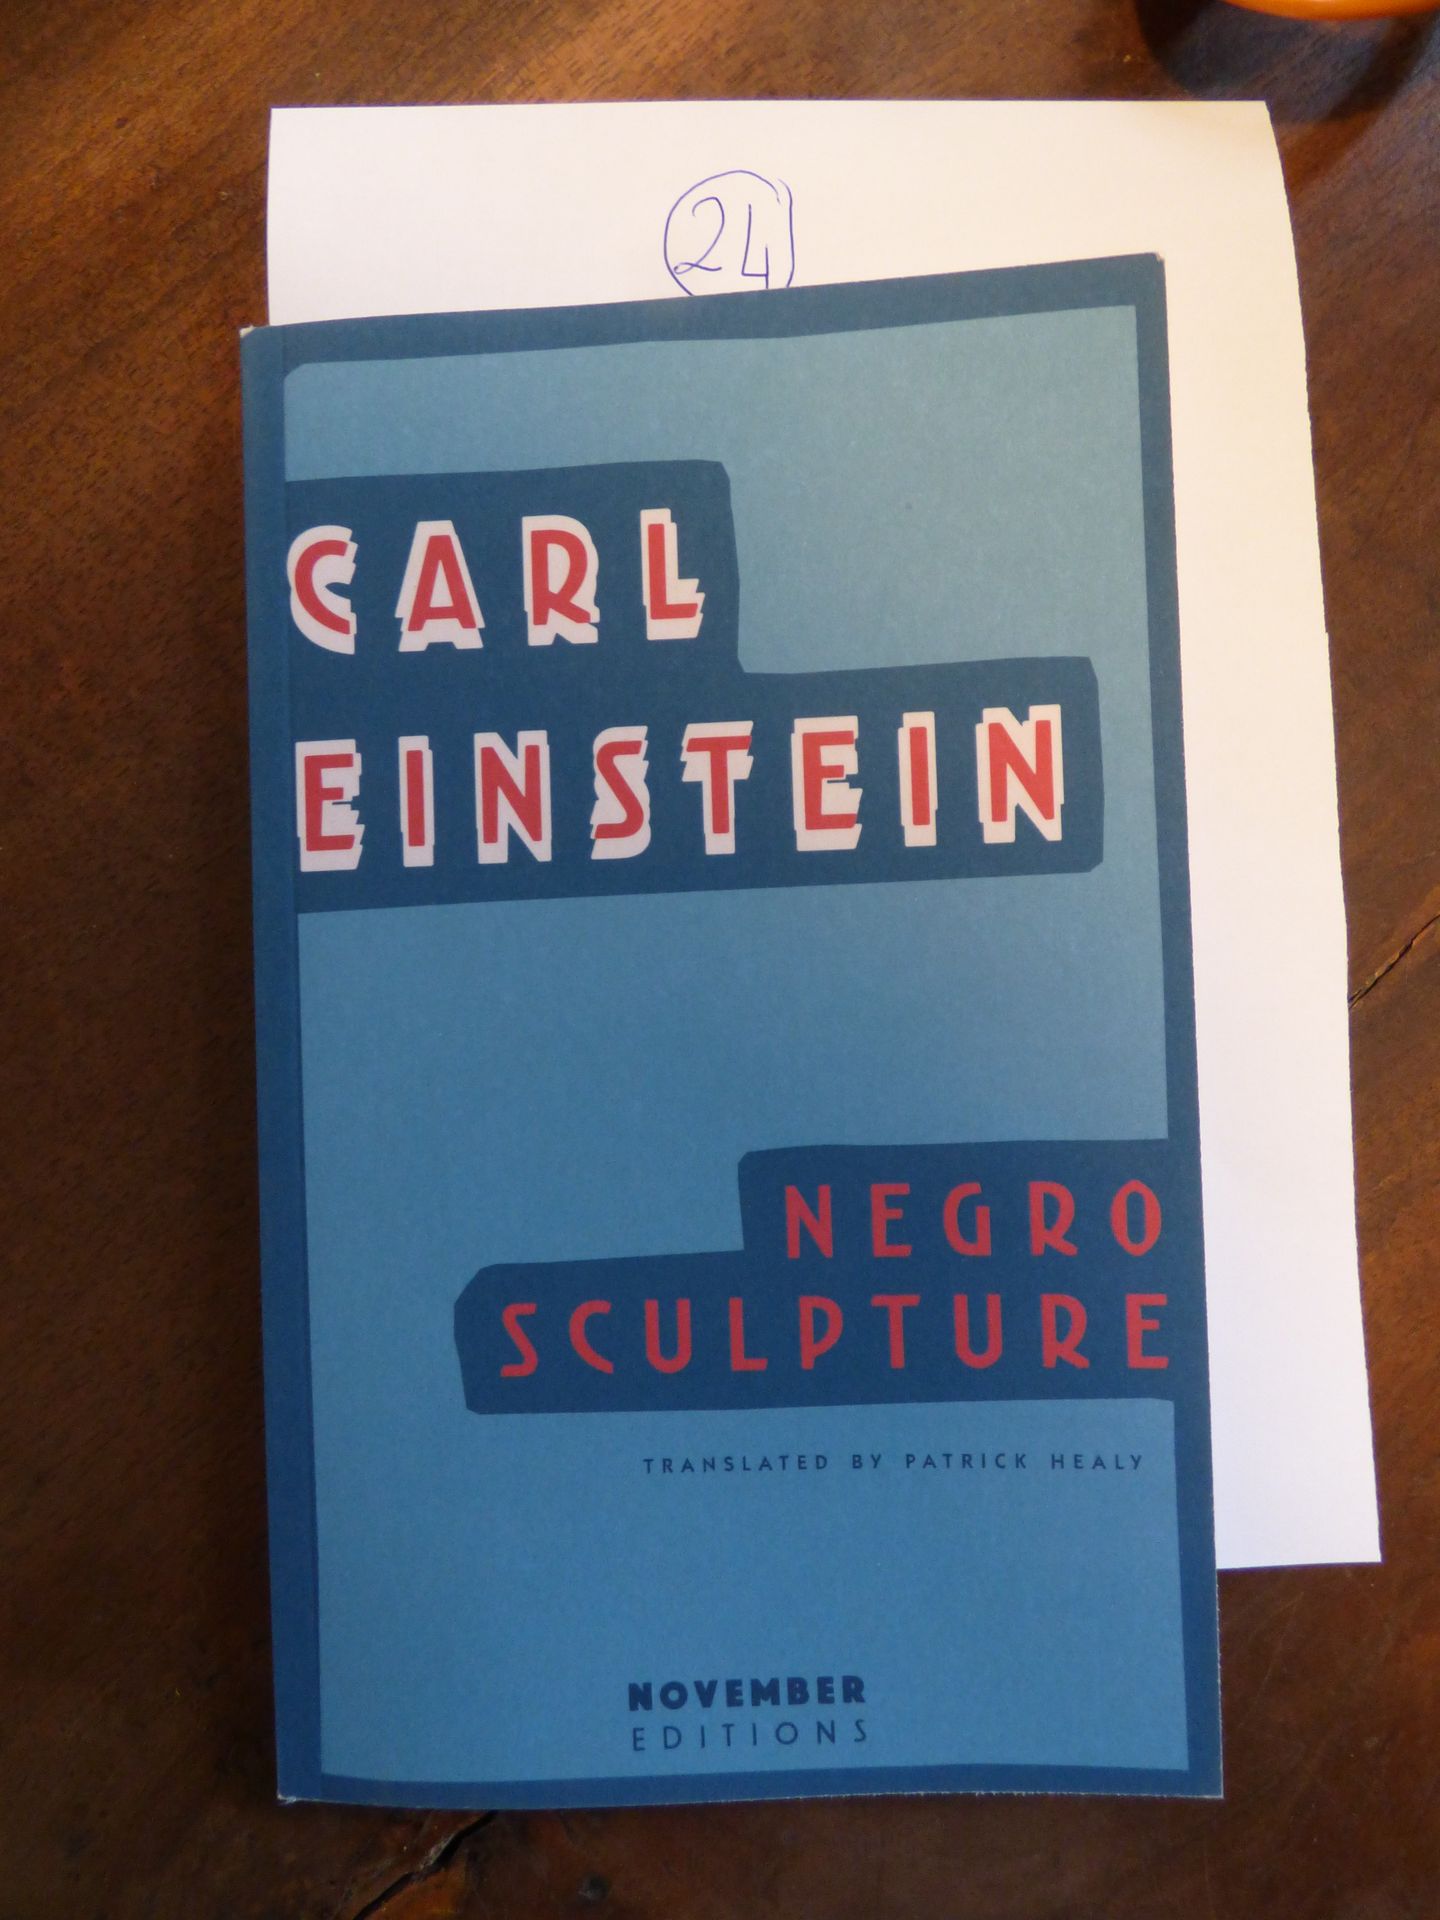 Negro Sculpture Carl Einstein, November Editions, 2016